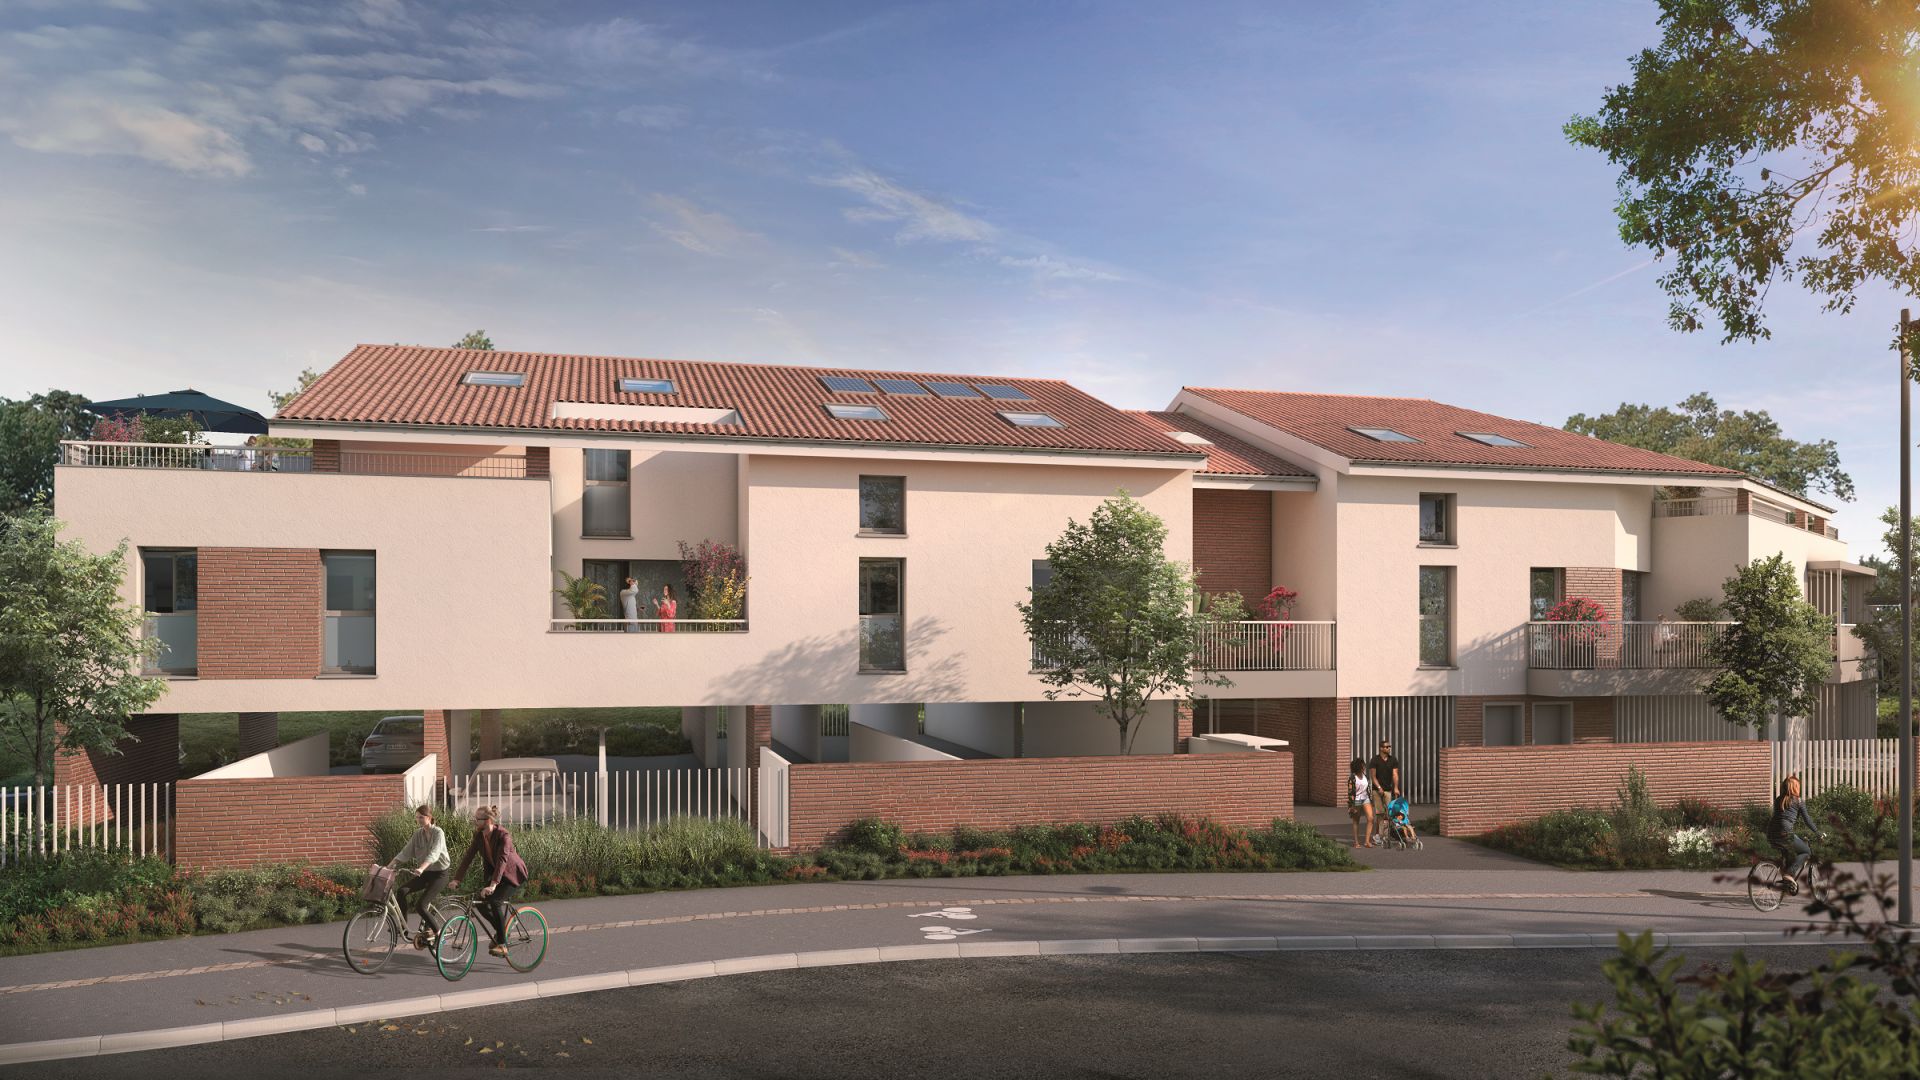 Greencity immobilier - achat appartements neufs du T2 au T4 - Résidence Villa Parme - 31240 L'Union